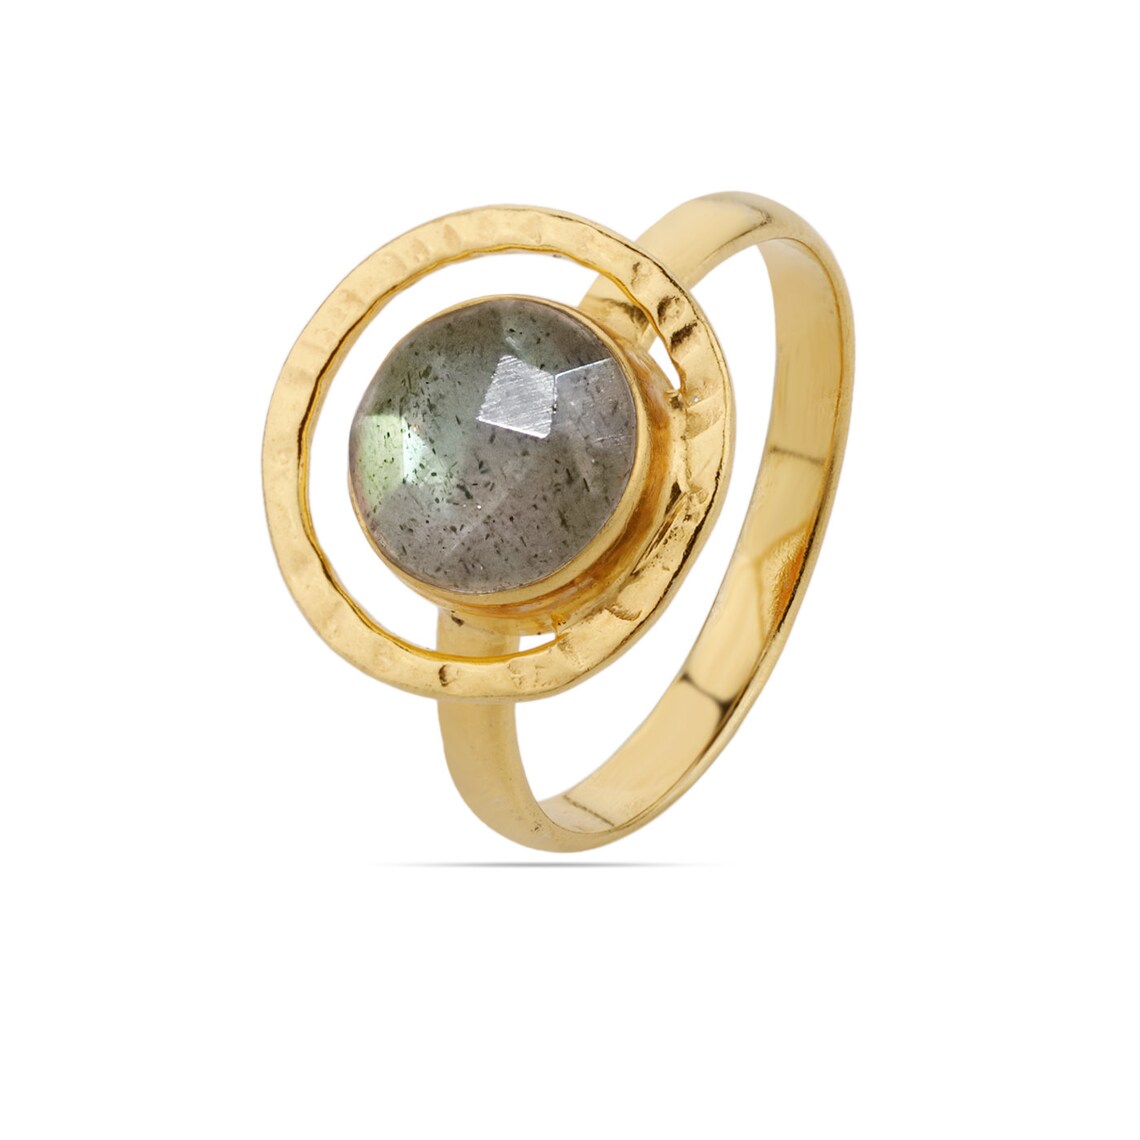 Round Labradorite Ring, Gold Labradorite Ring, Labradorite Gemstone Ring, Sterling Silver Labradorite Gemstone Ring